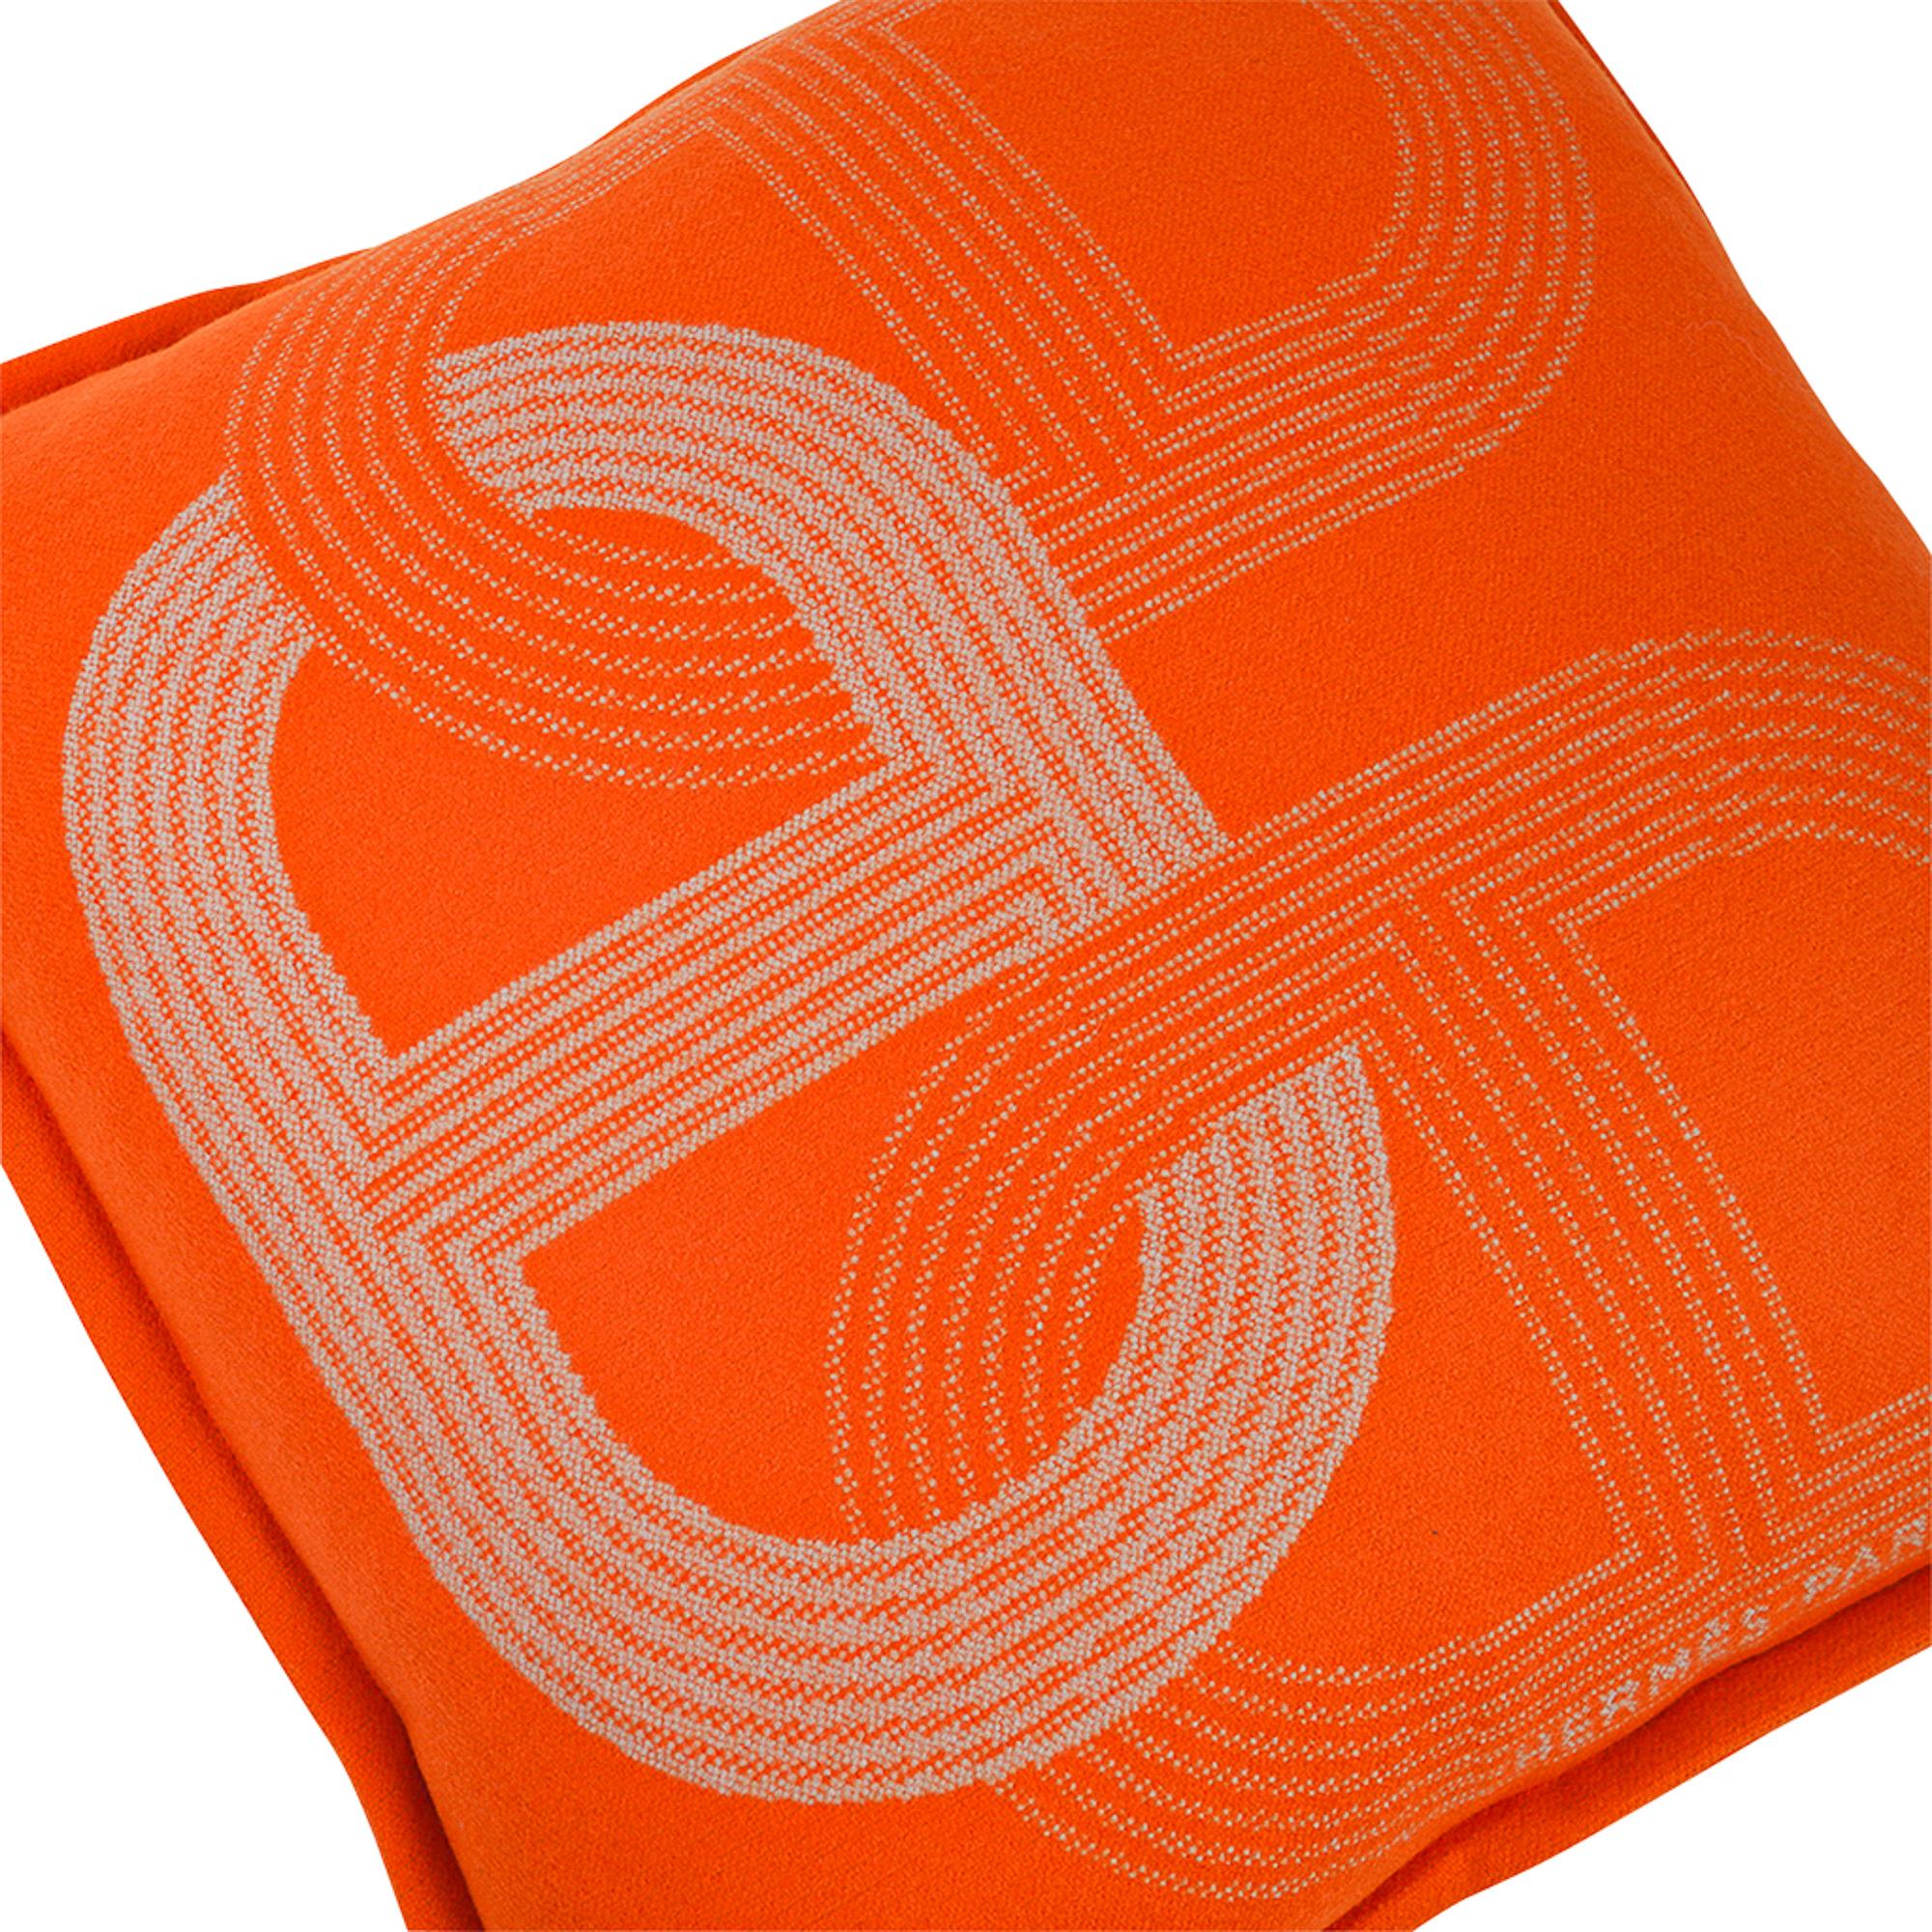 Mightychic propose un oreiller Hermes Circuit 24 dans un coloris orange.
Créée en 100% laine mérinos, cette fabuleuse couverture est un ajout chic à toute pièce.
Conçu par Benoit-Pierre en 2012, il s'agit d'une version contemporaine de l'emblème de